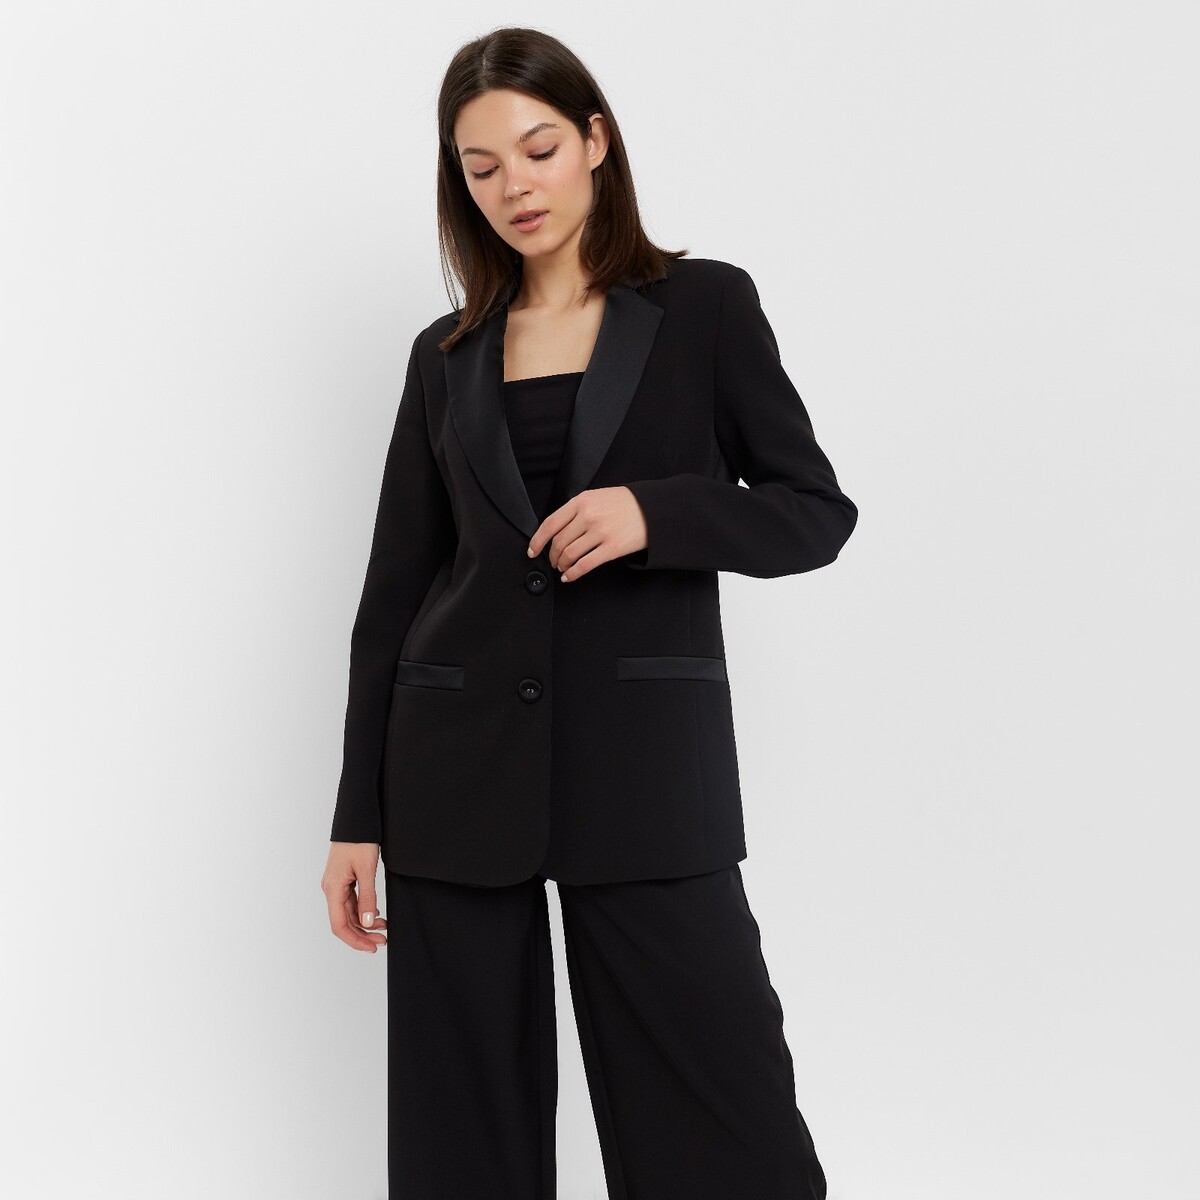 Пиджак MINAKU, размер 42, цвет черный 02054858 - фото 1